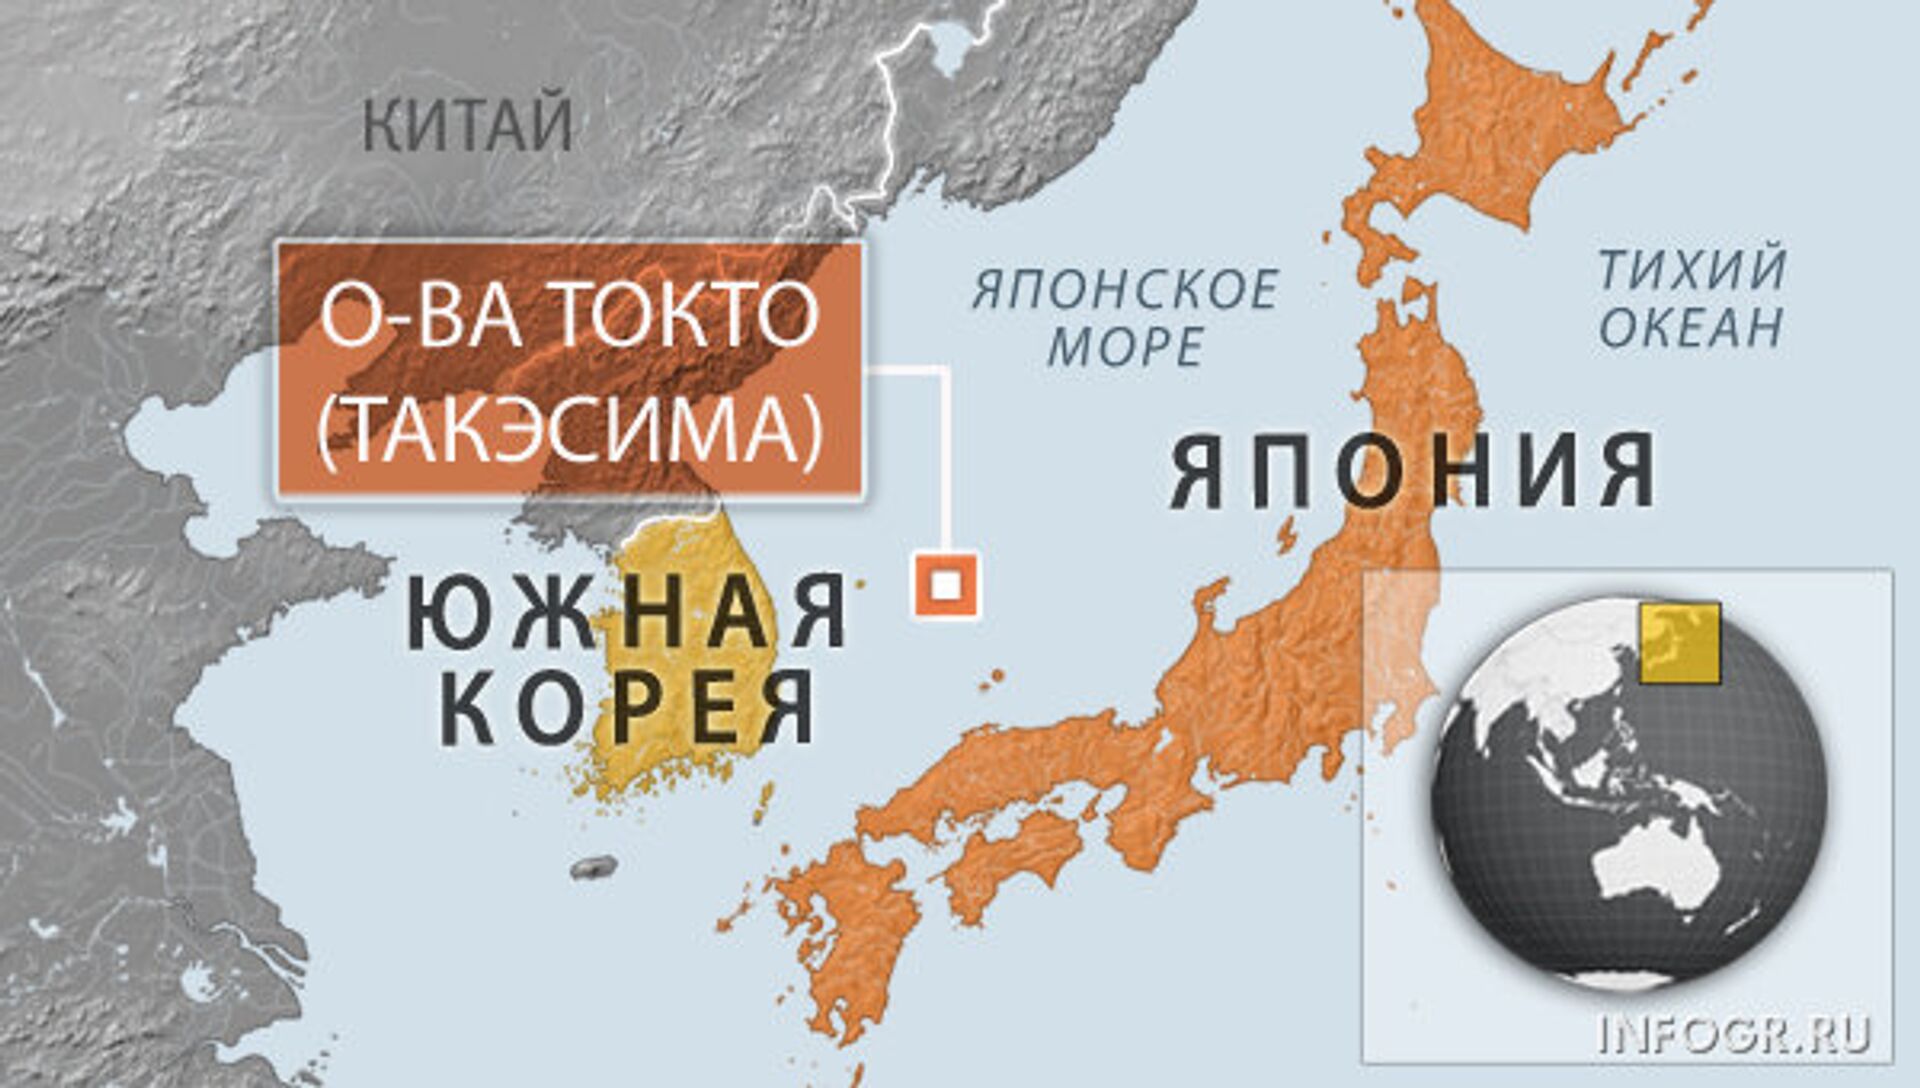 Спор Японии и Южной Кореи за Токто Такэсима